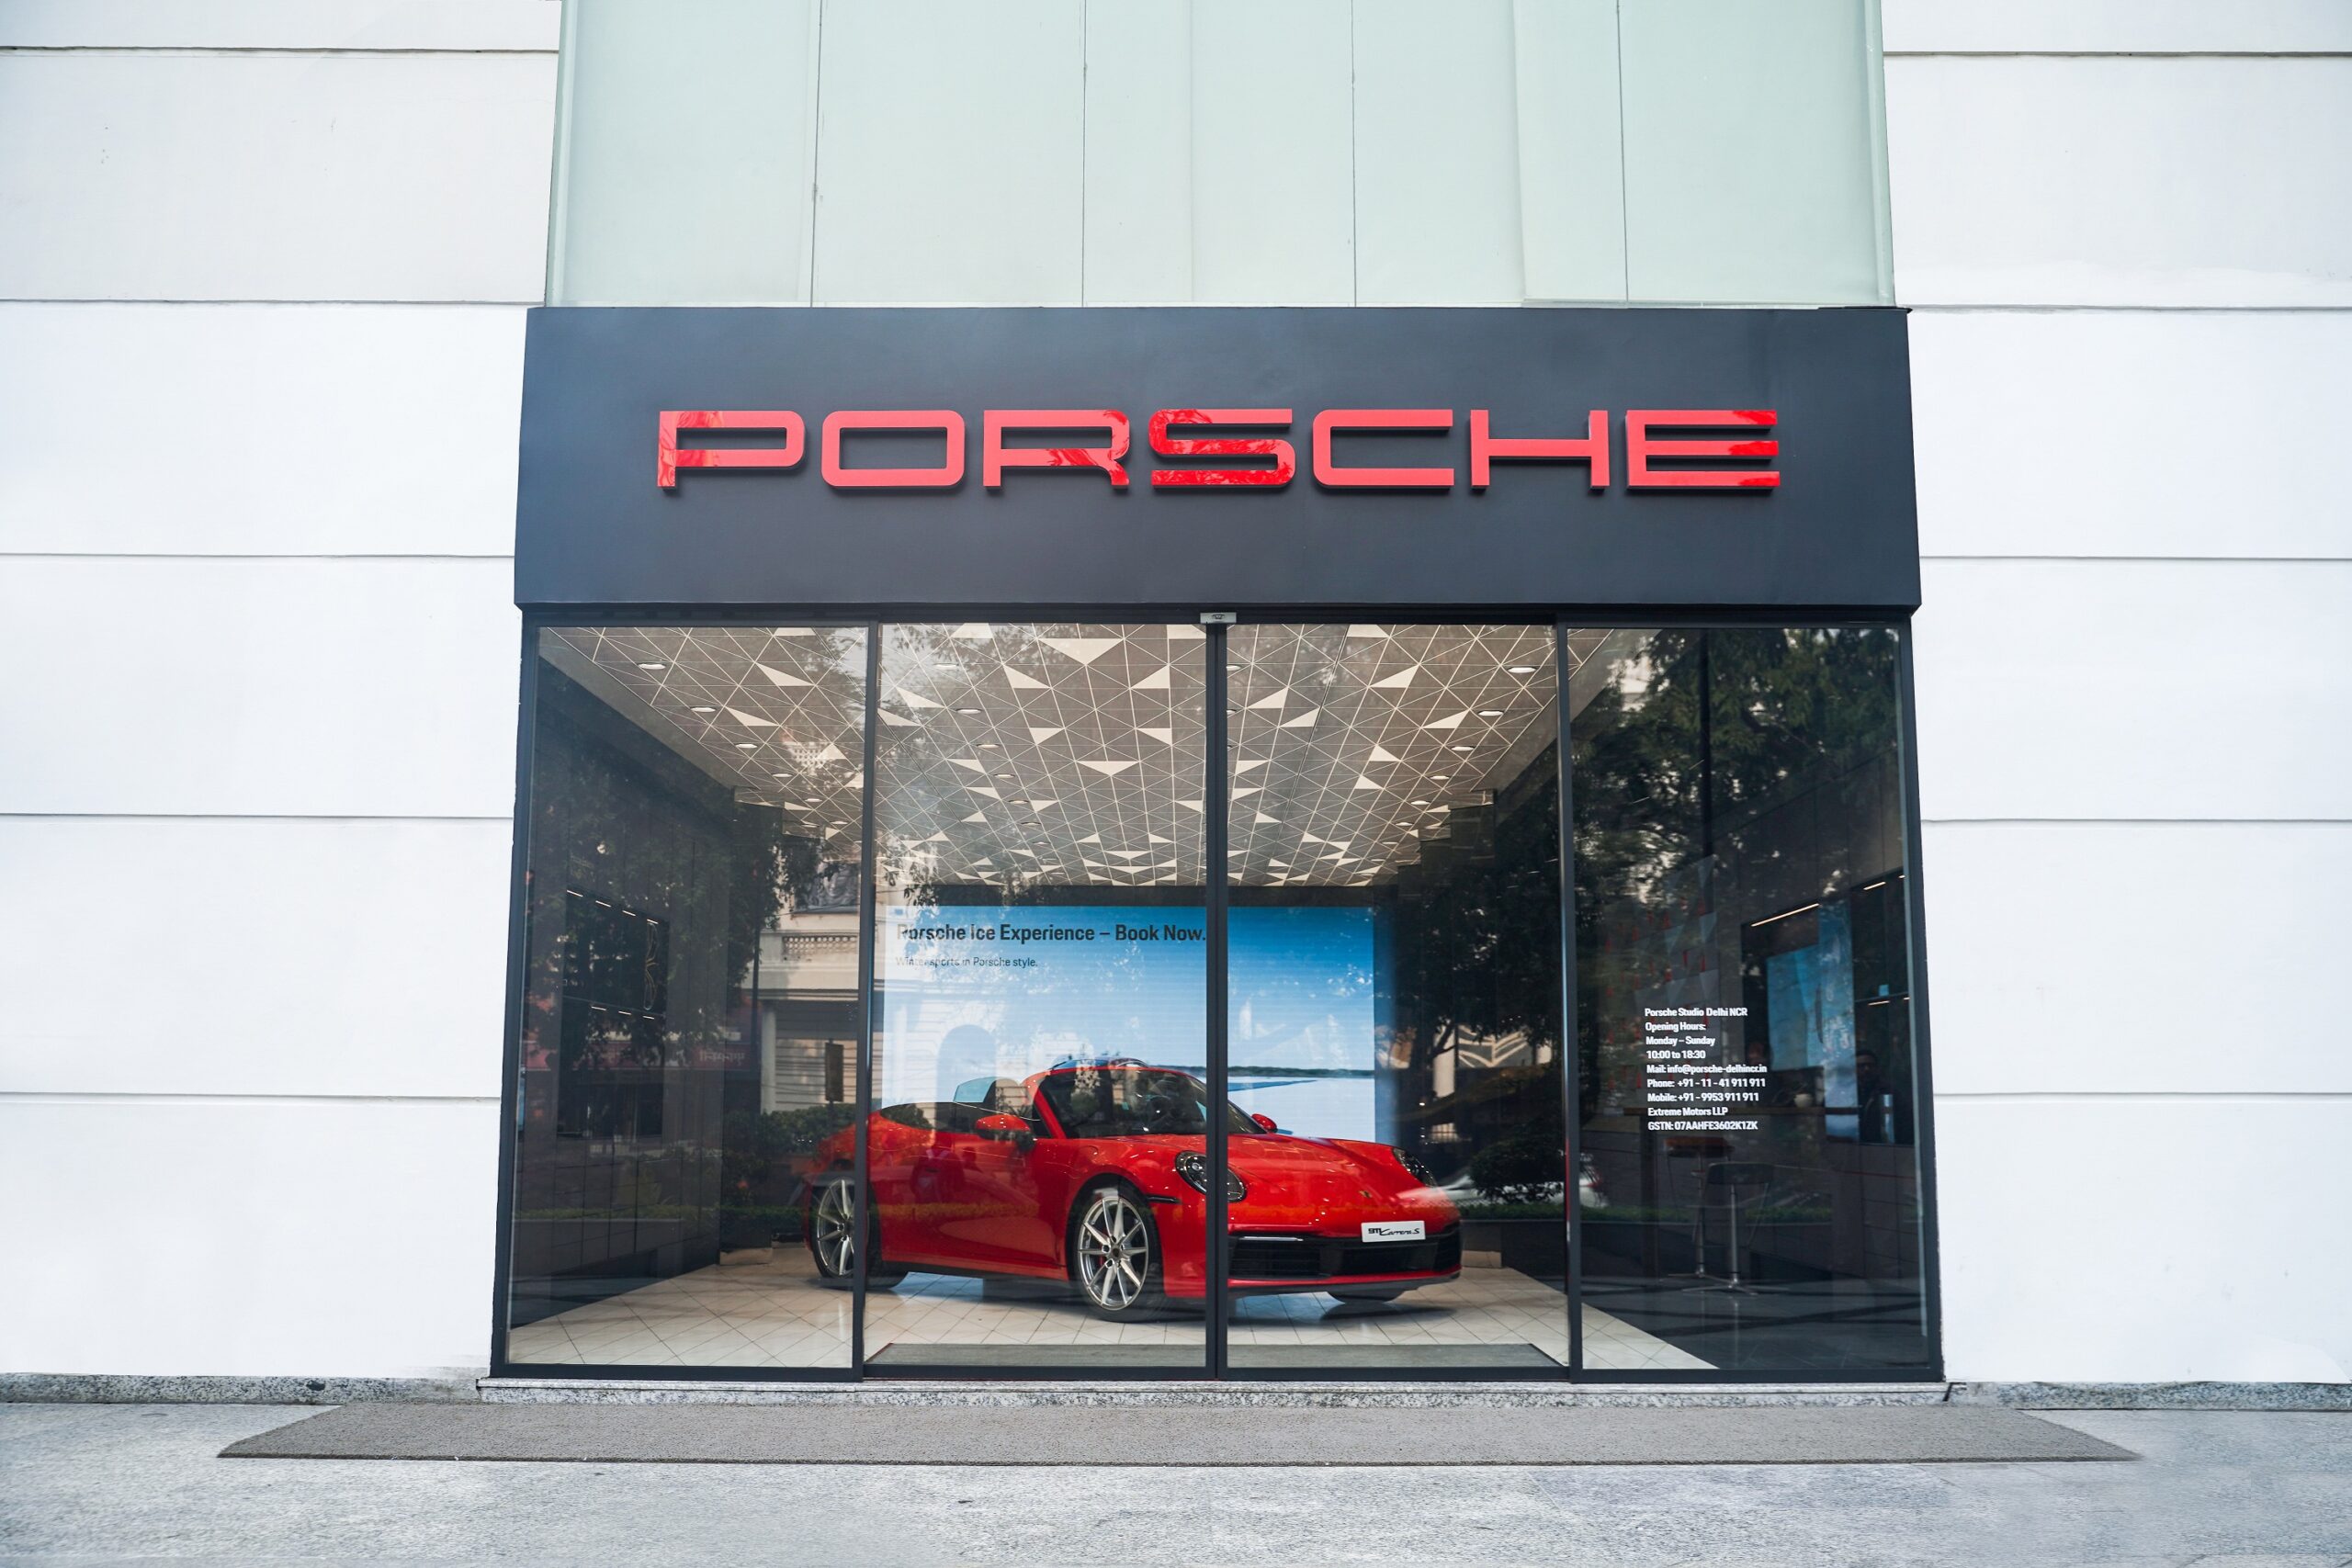 Porsche Studio Delhi brings new brand experience to India